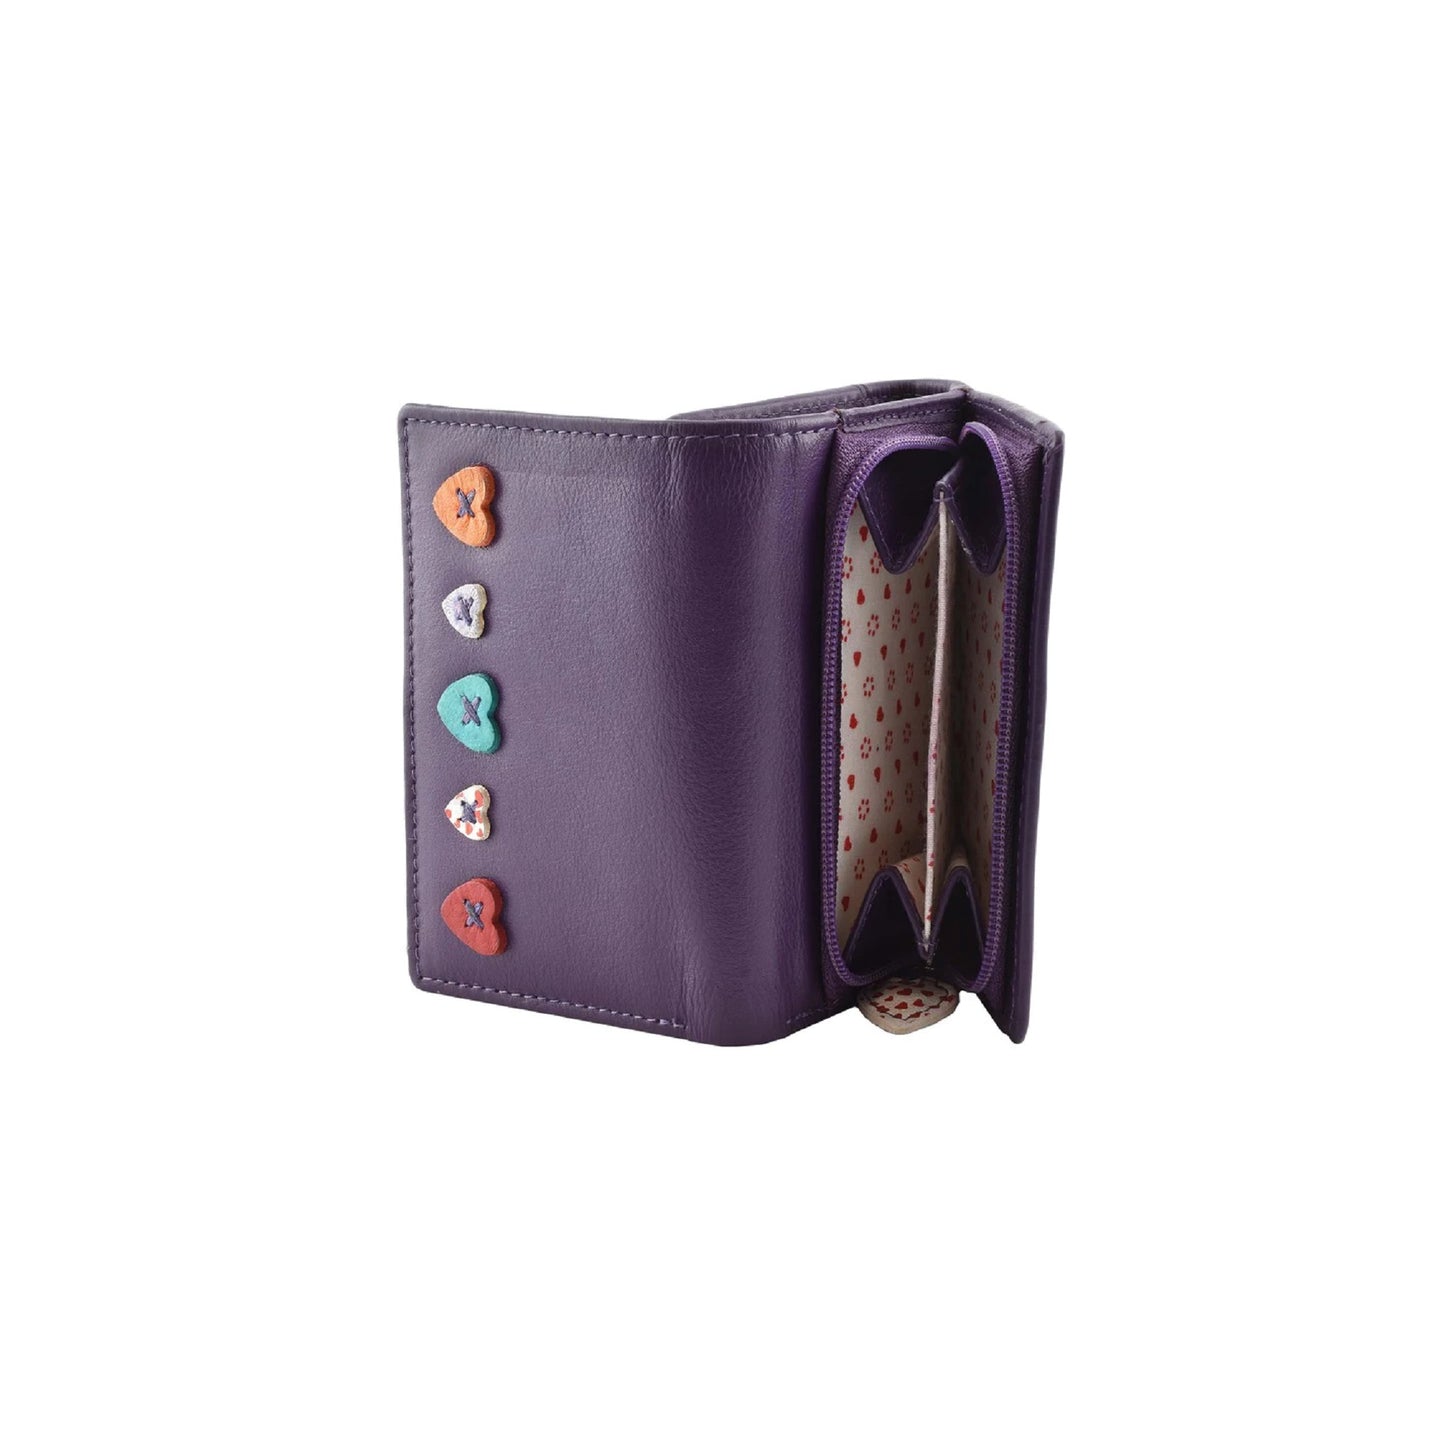 Lucy Tri-Fold Leather Purse - Purple